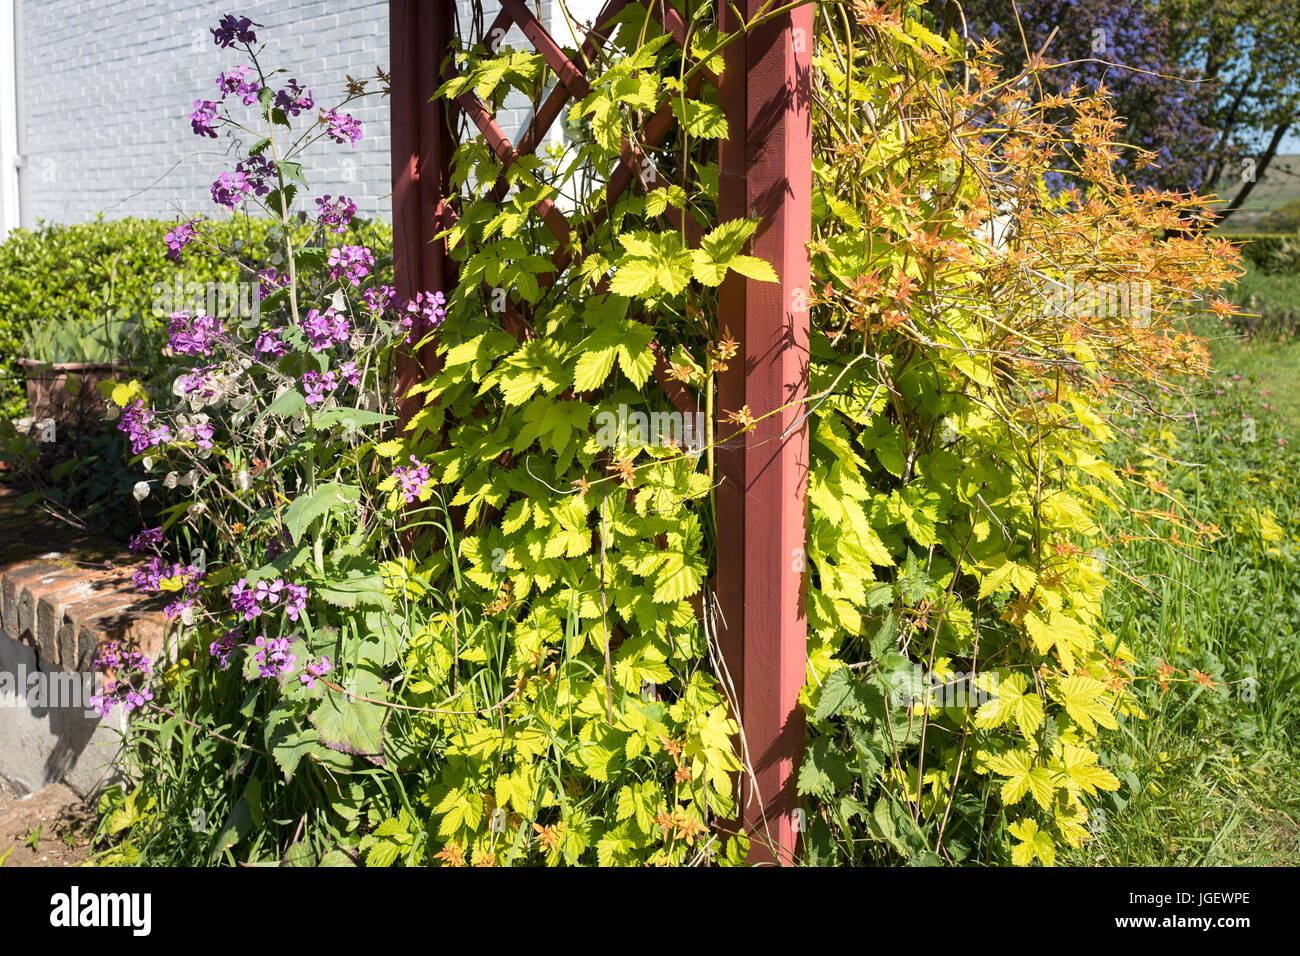 Auto-seeded honestidad crece junto con follaje amarillo dorado del ornamento y hop-verano flowiering jazmines en un jardín inglés en Abril Foto de stock